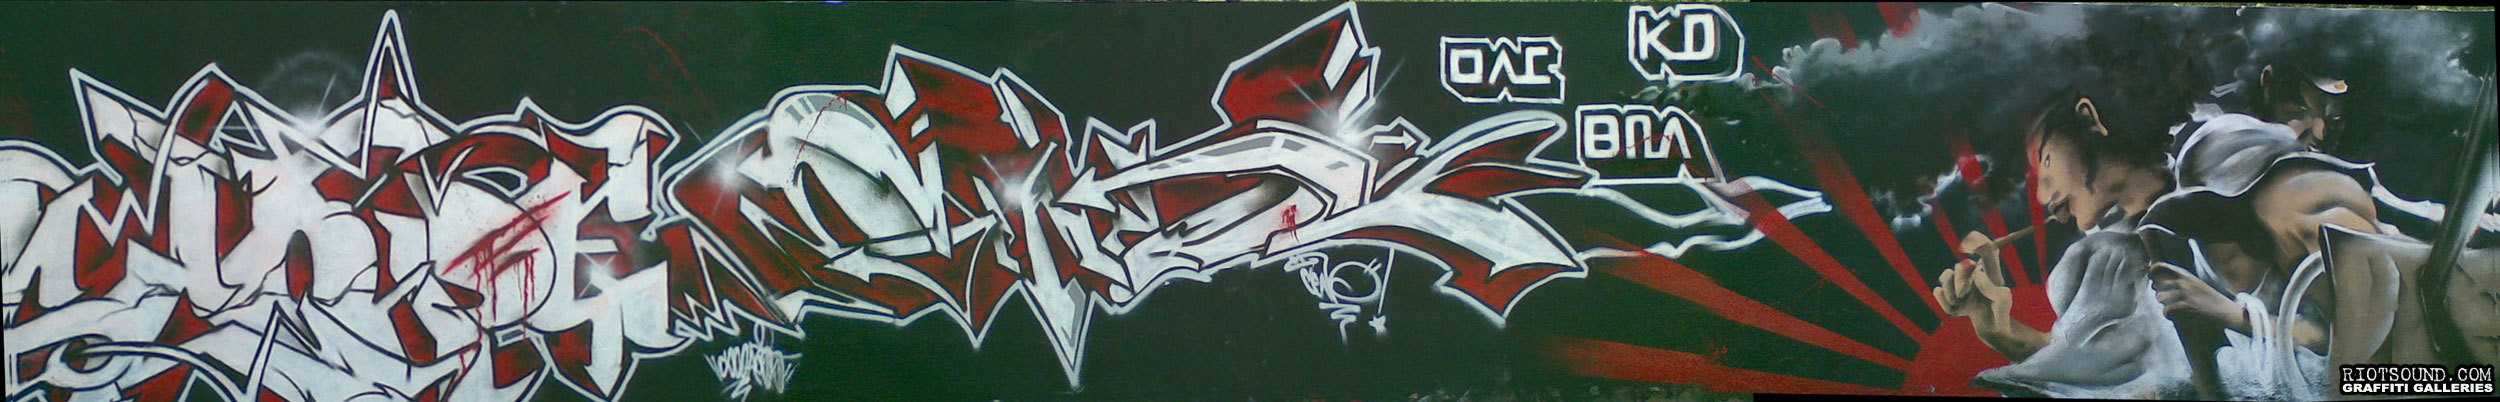 Singapore Graffiti Production